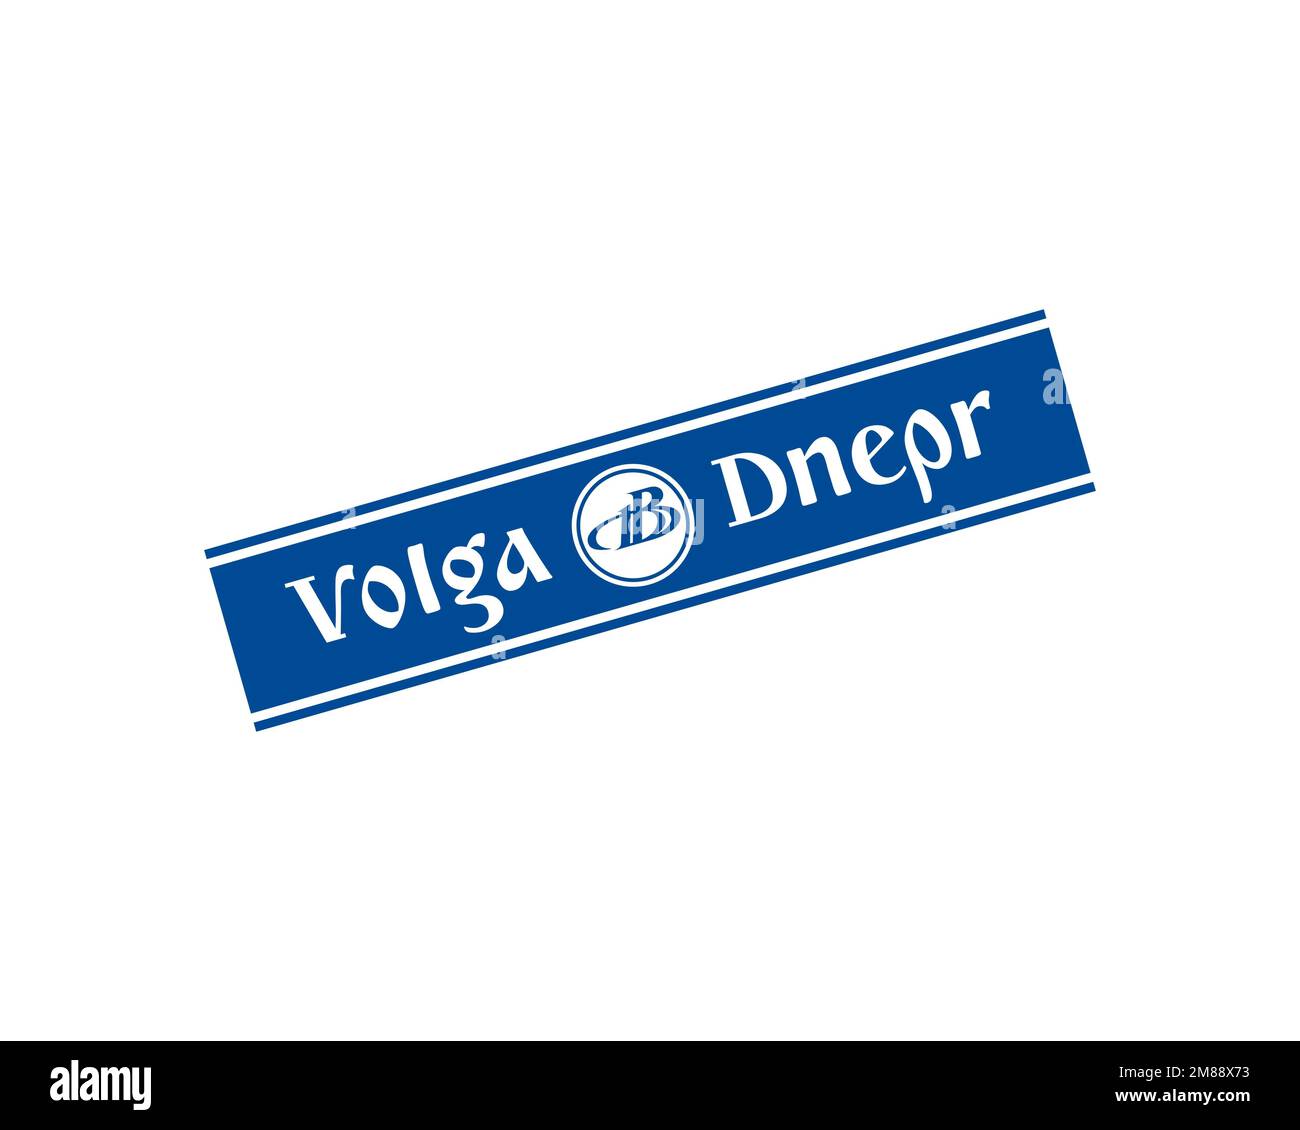 Volga Dnepr Airline, logo pivoté, arrière-plan blanc Banque D'Images